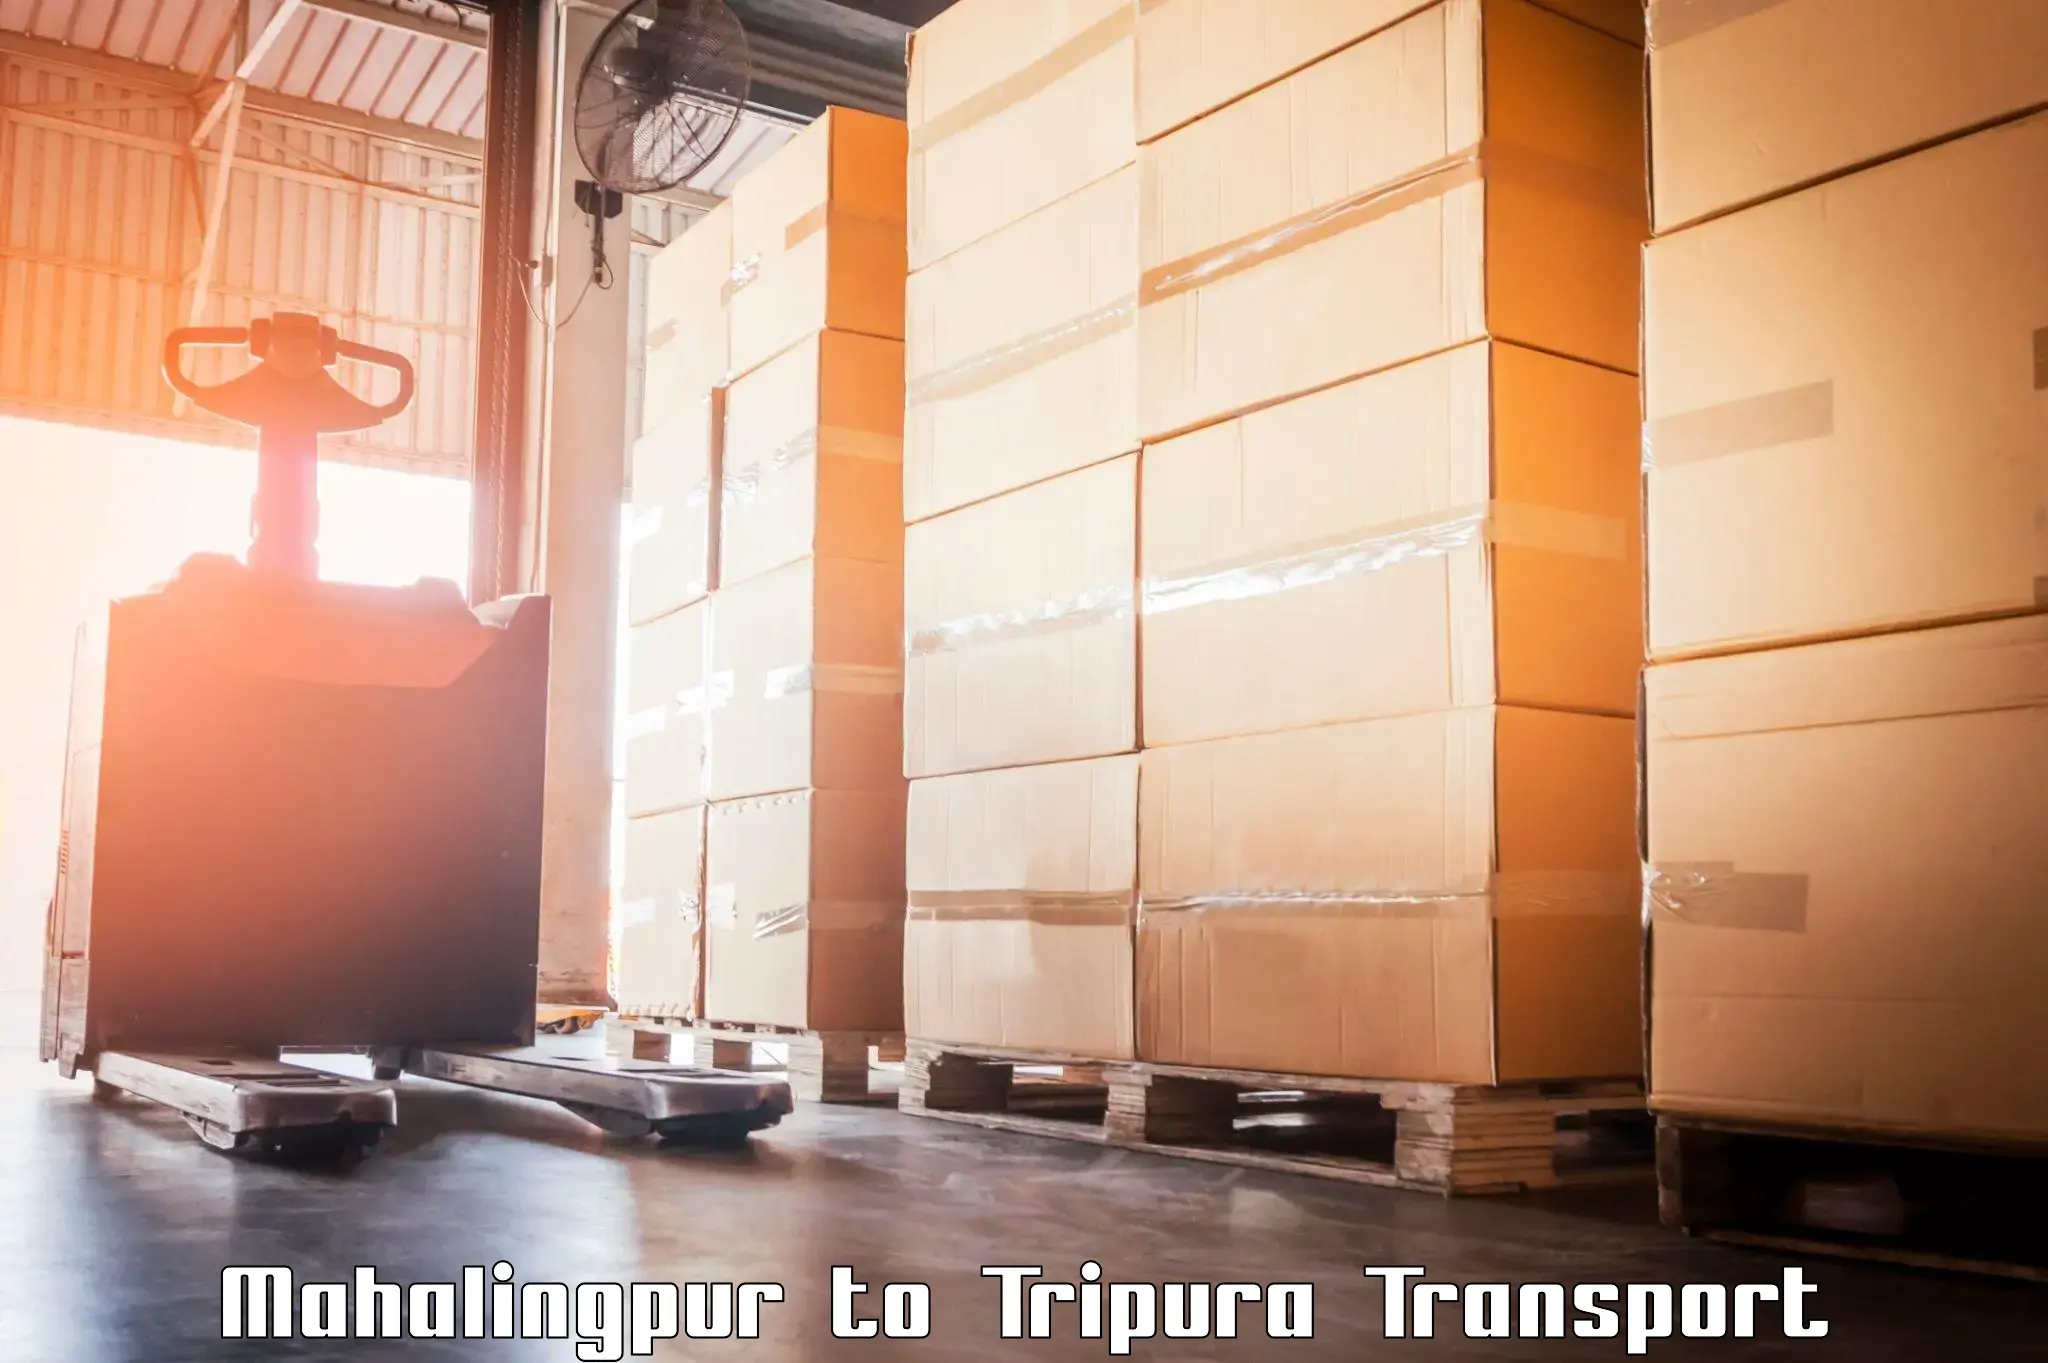 Cargo train transport services Mahalingpur to Kailashahar